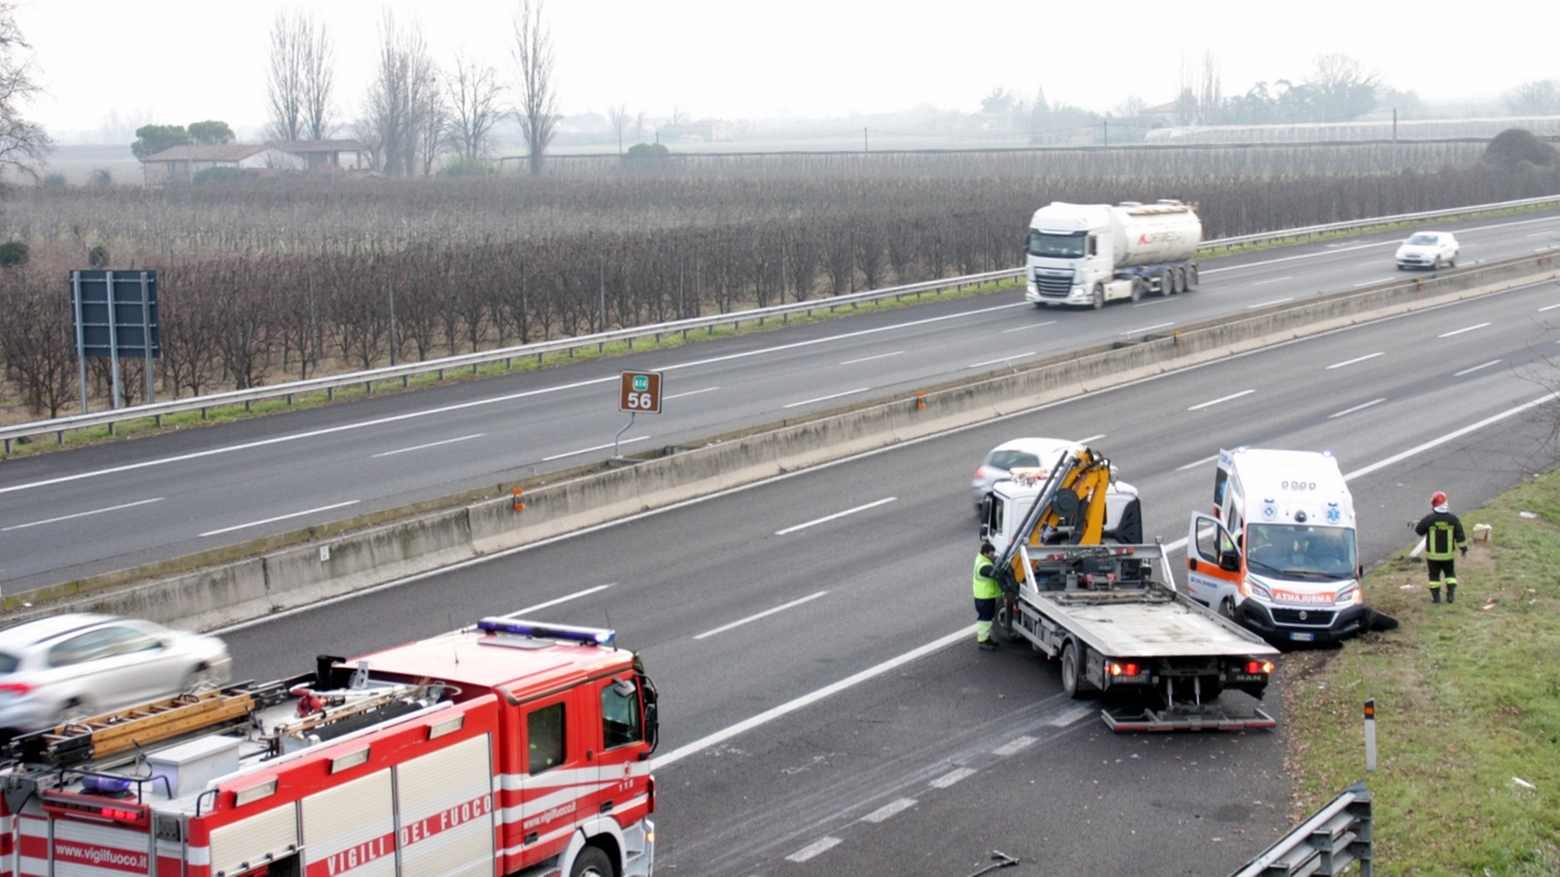 Incidente A14 Faenza, ambulanza si ribalta in autostrada